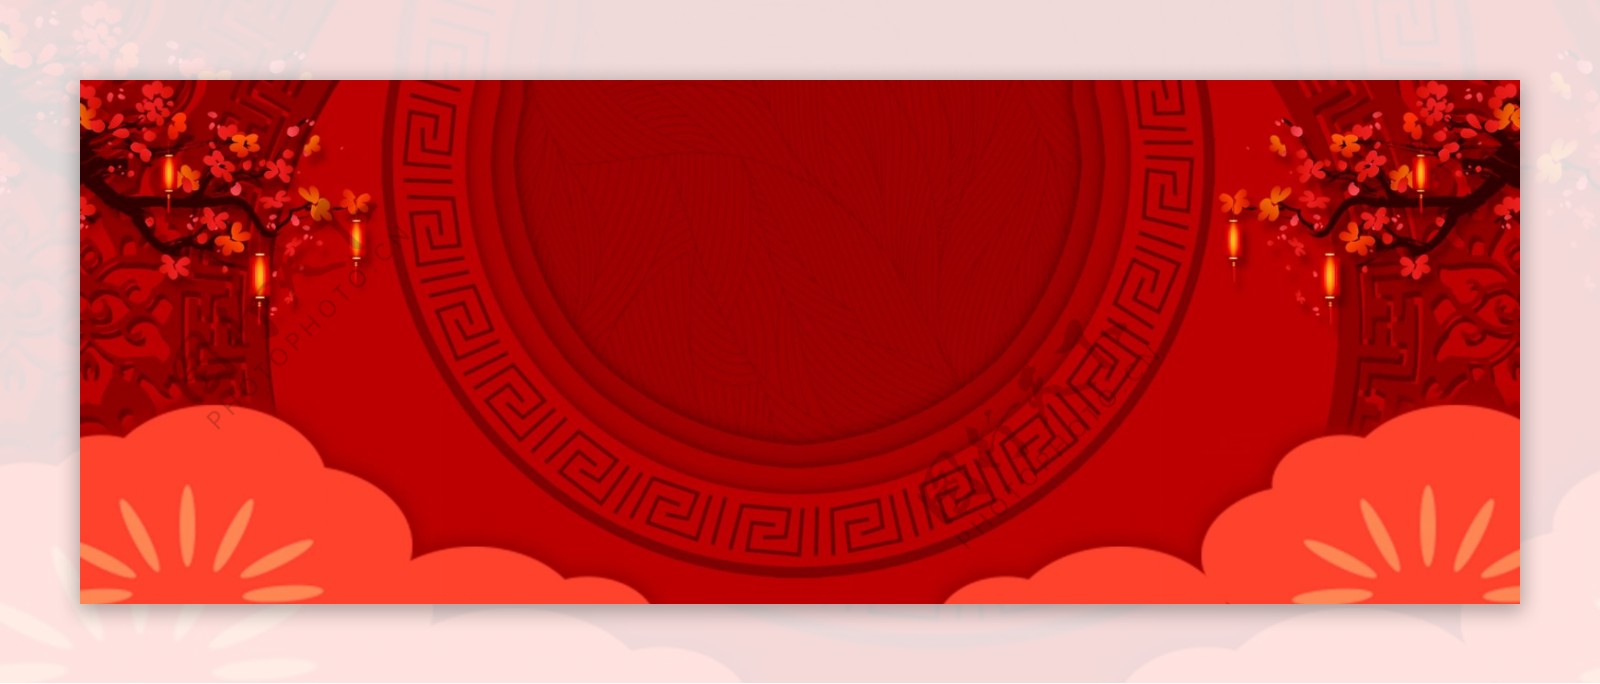 春节剪纸红色海报背景